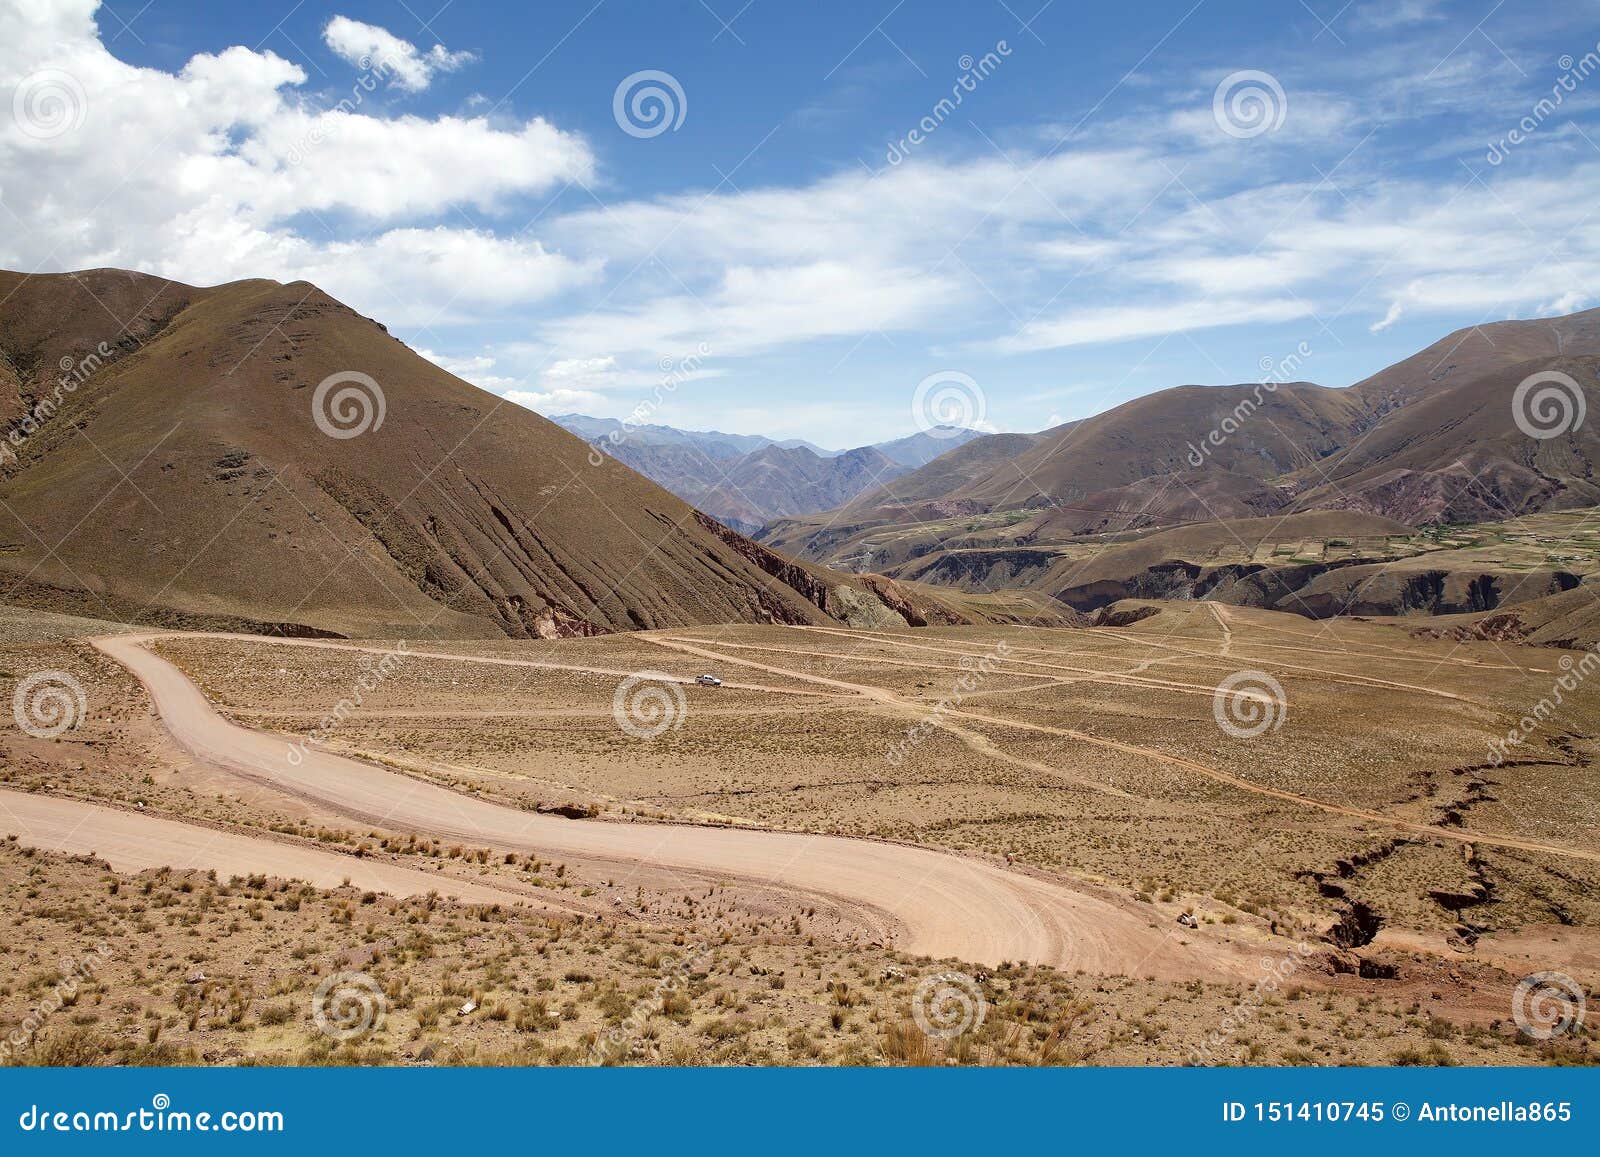 Abra del Condor-bergpas bij een verhoging van 4000 m op de grens van de Provincie van Salta en Jujuy-, Argentinië. De weg van Abra del Condor, een hoge bergpas bij een verhoging van 4000 die m boven het overzees - niveau op de grens van de Provincie van Salta en Jujuy-, in noordwestelijk Argentinië wordt gevestigd Het gebied kenmerkt dramatisch bergachtig landschap